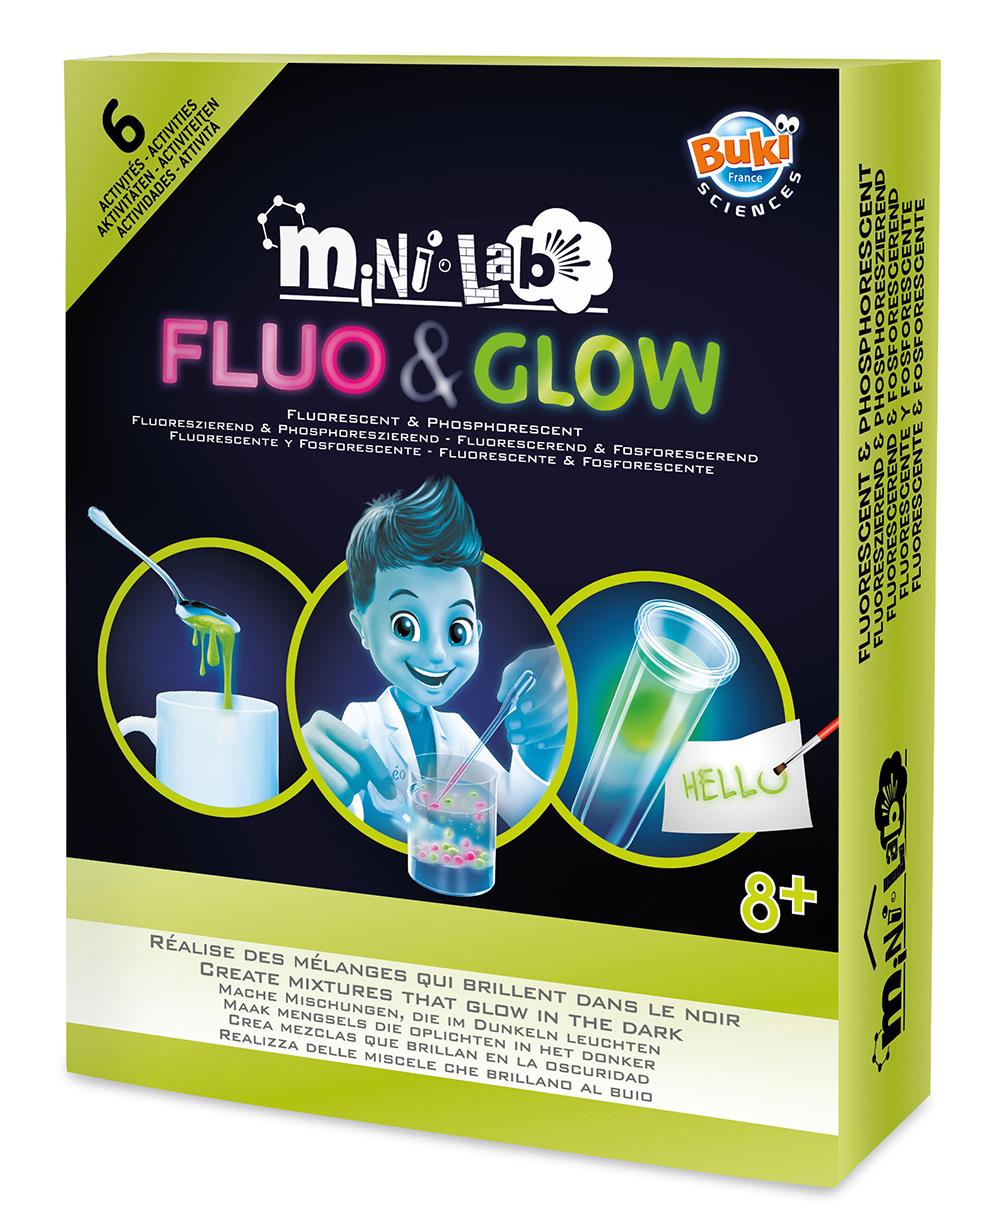 Buki France Mini Lab - Fluorescent & Phosphorescent – Tour de jeux -  Divertioz